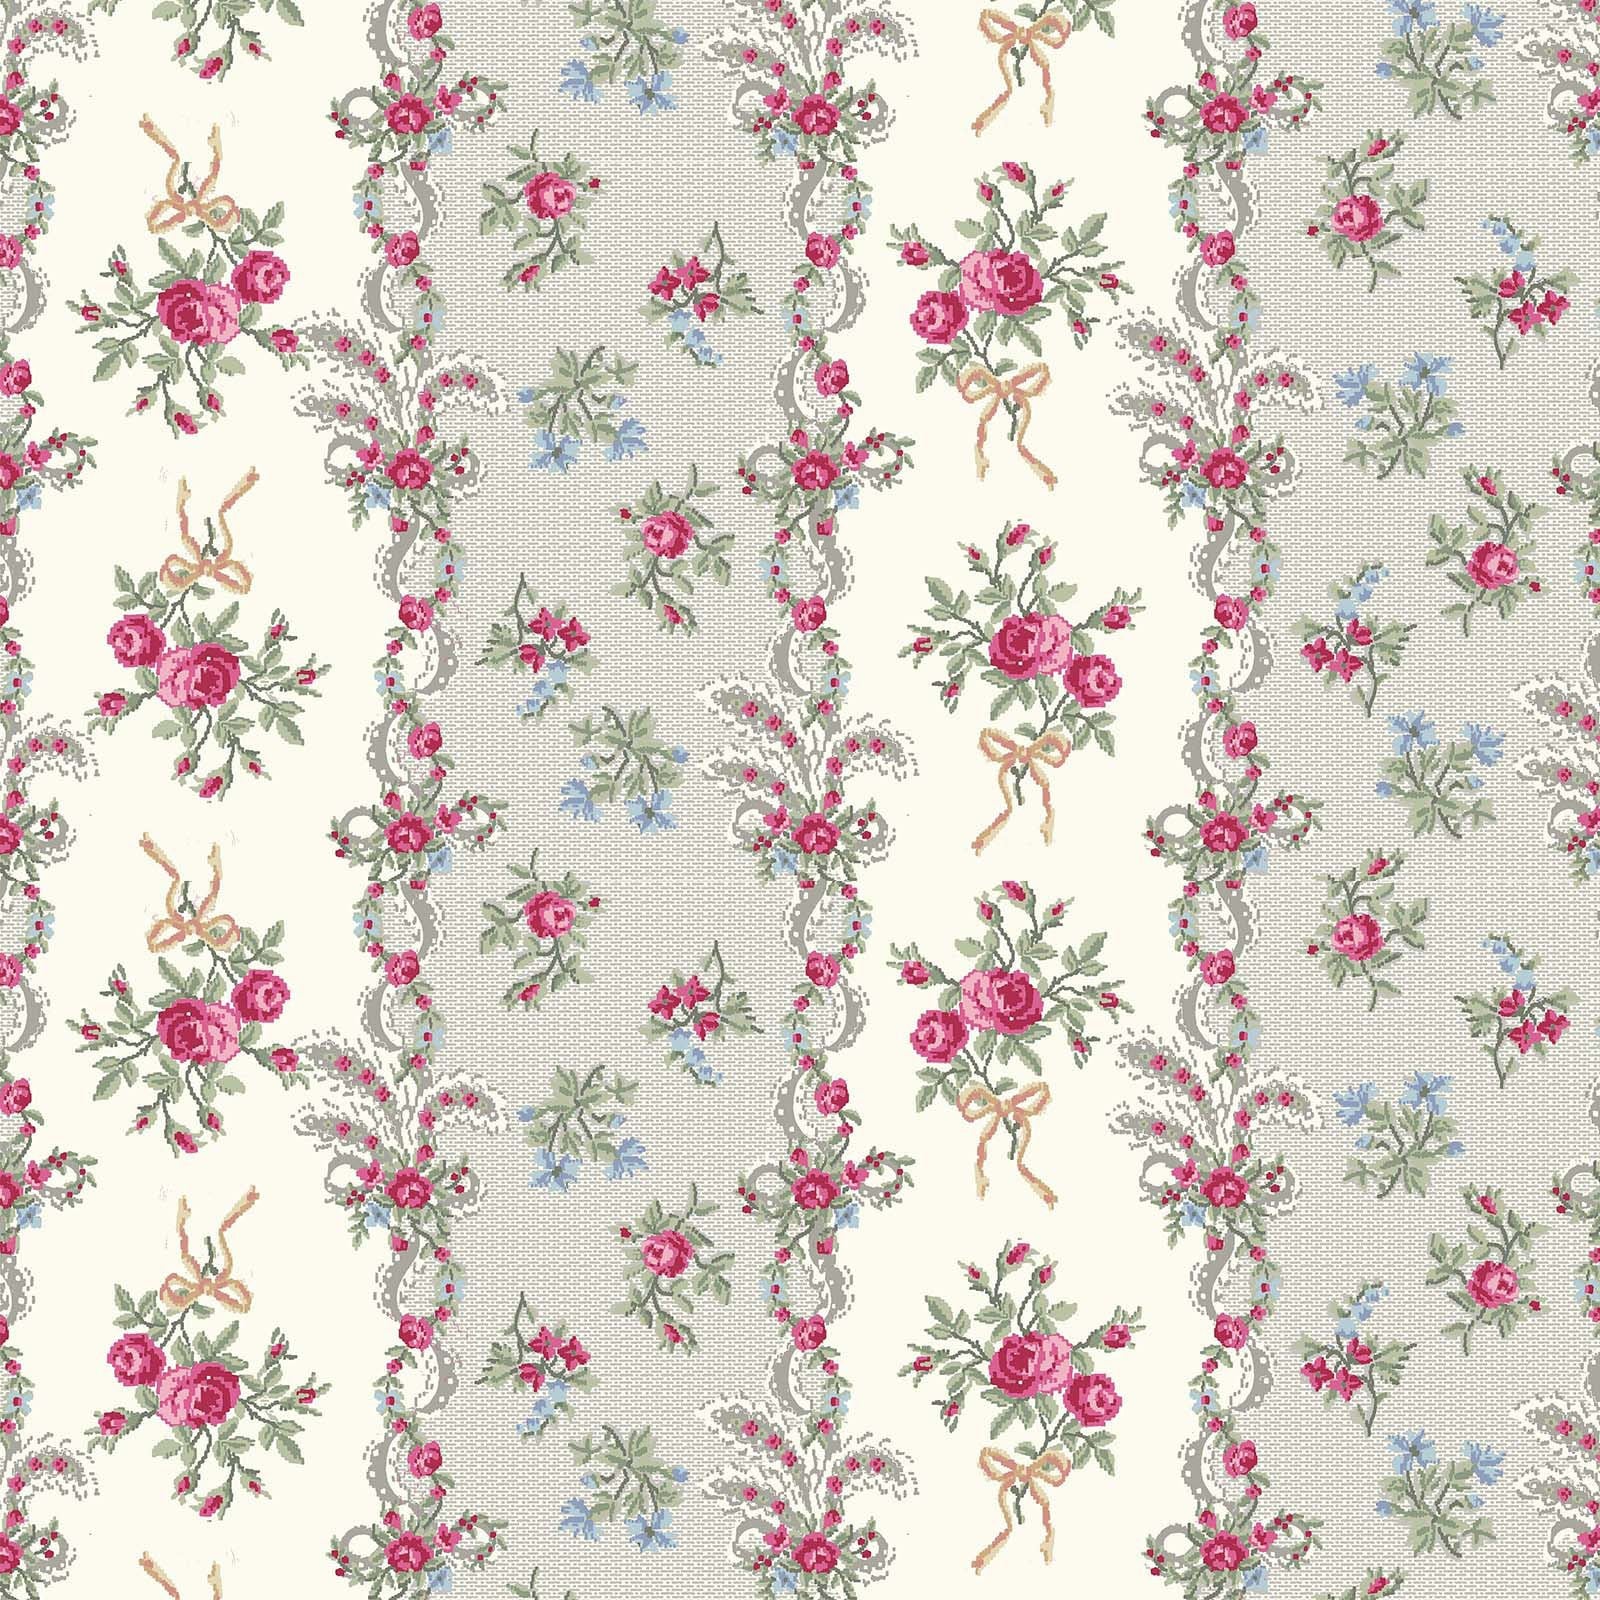 Ruru Rose Bouquet in Paris cotton fabric by Quilt Gate Ru2370-13B Rose Stripes Cream